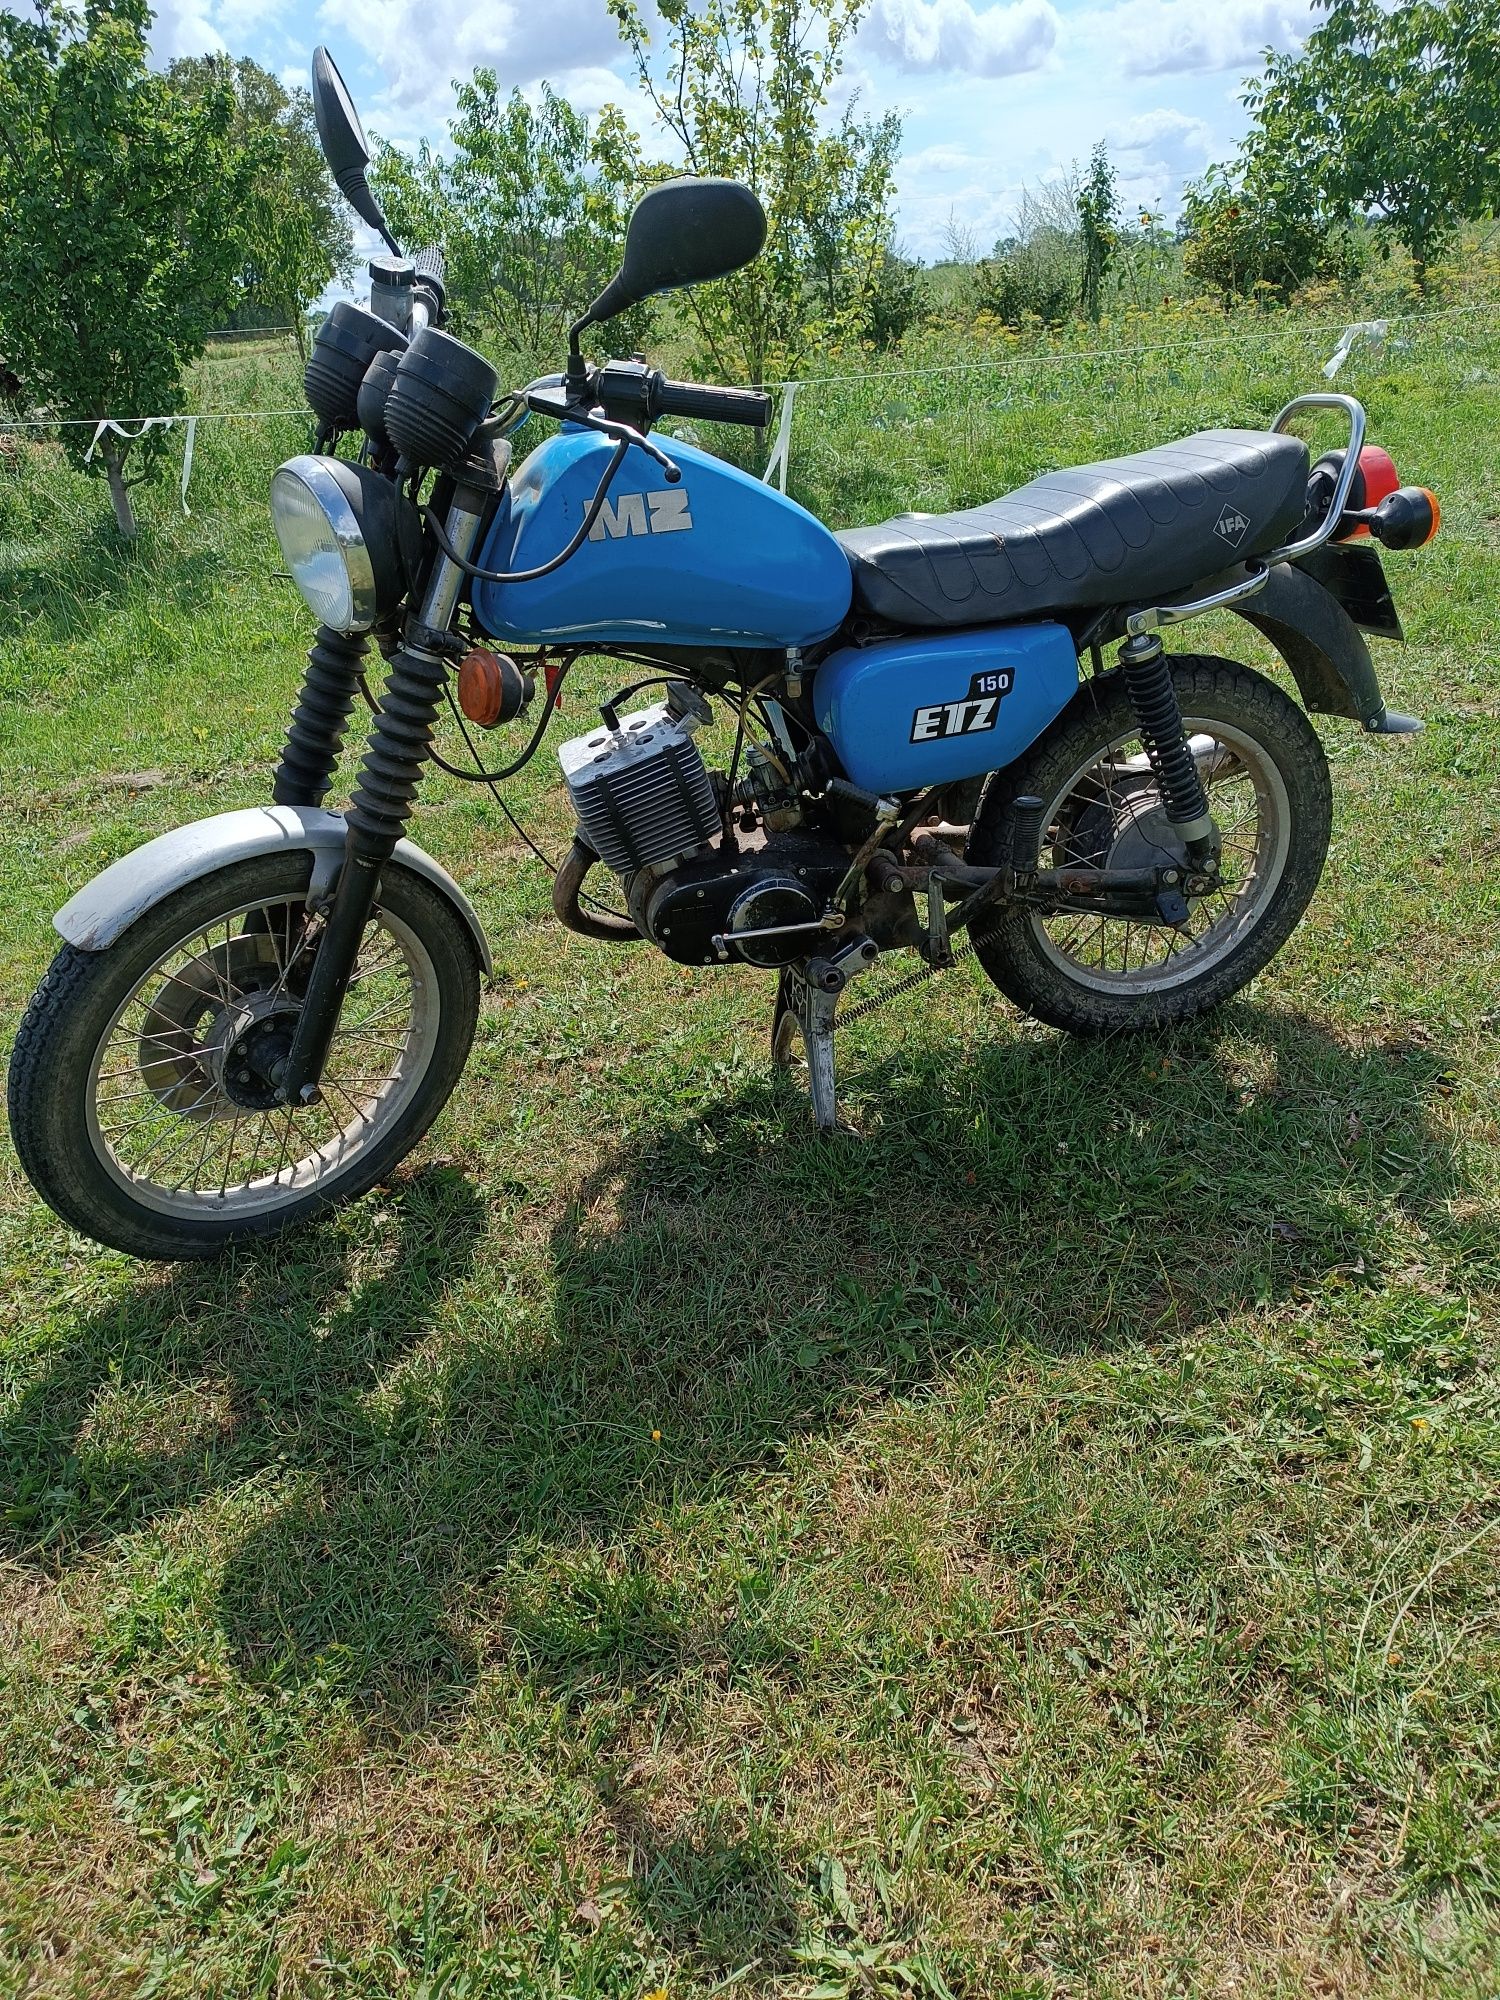 Motocykl  MZ ETZ 150 sprzedam lub zamienię.